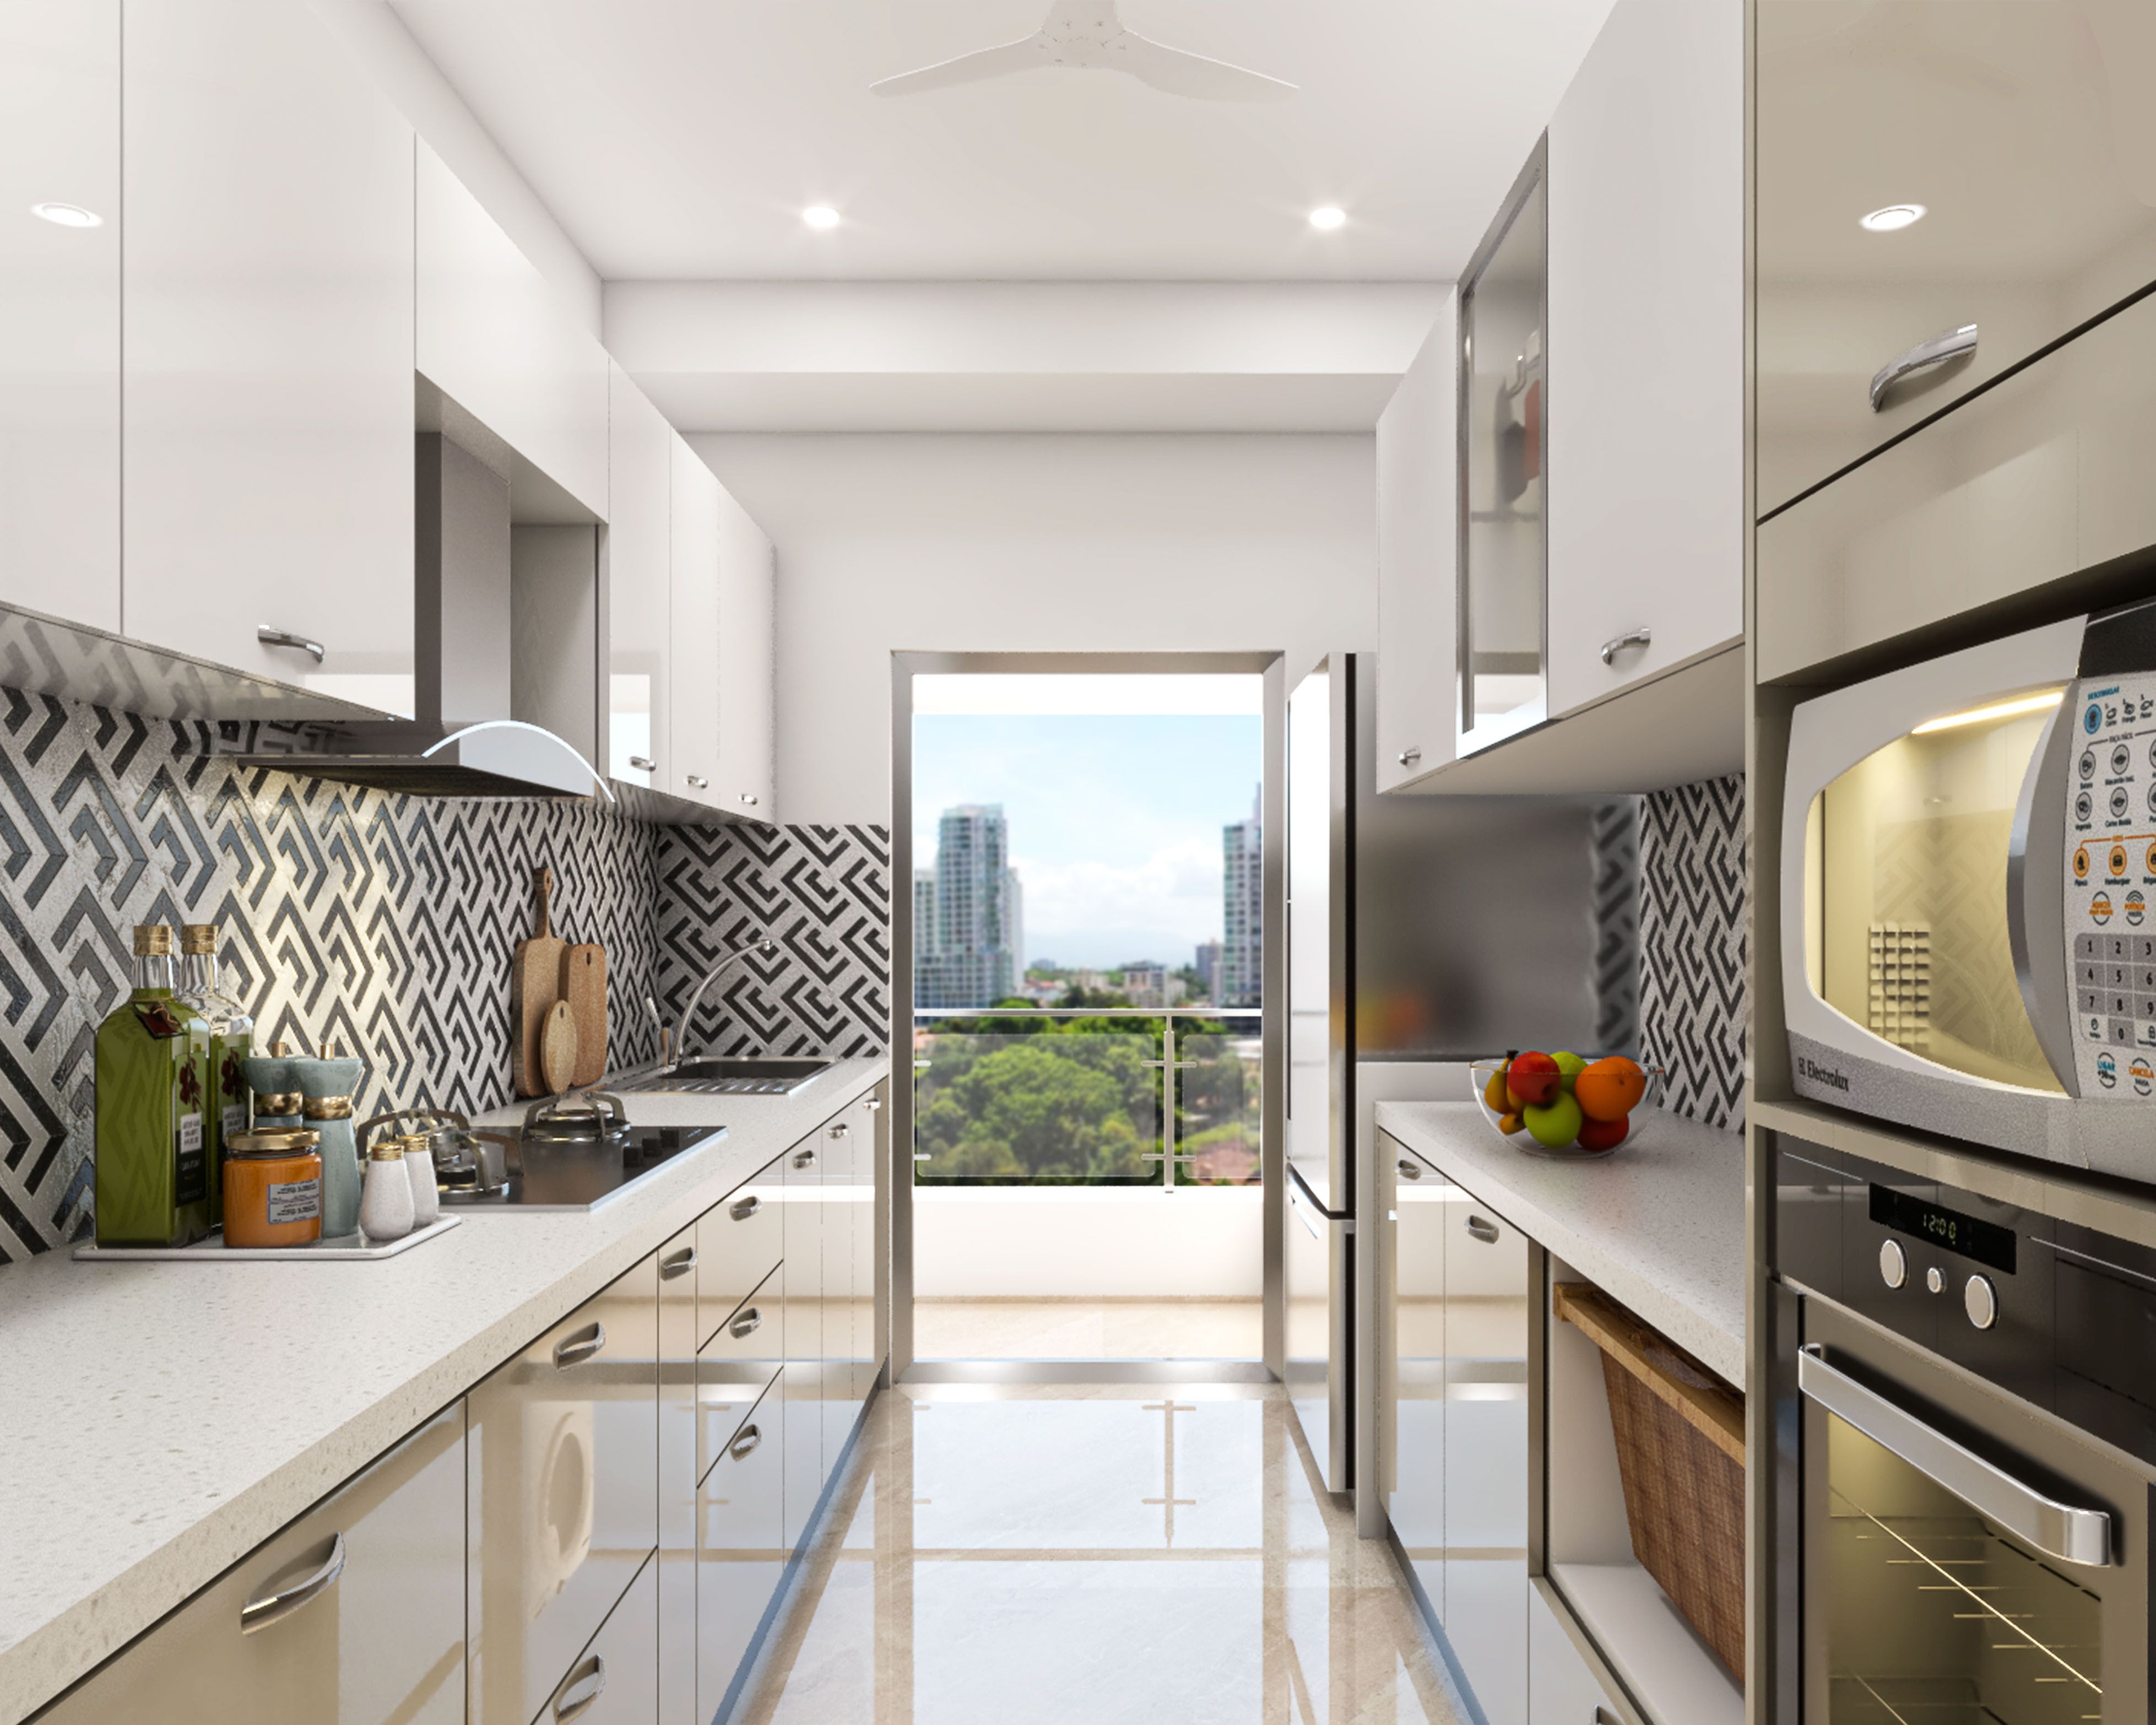 Modern Parallel Modular Kitchen Design In Beige And White